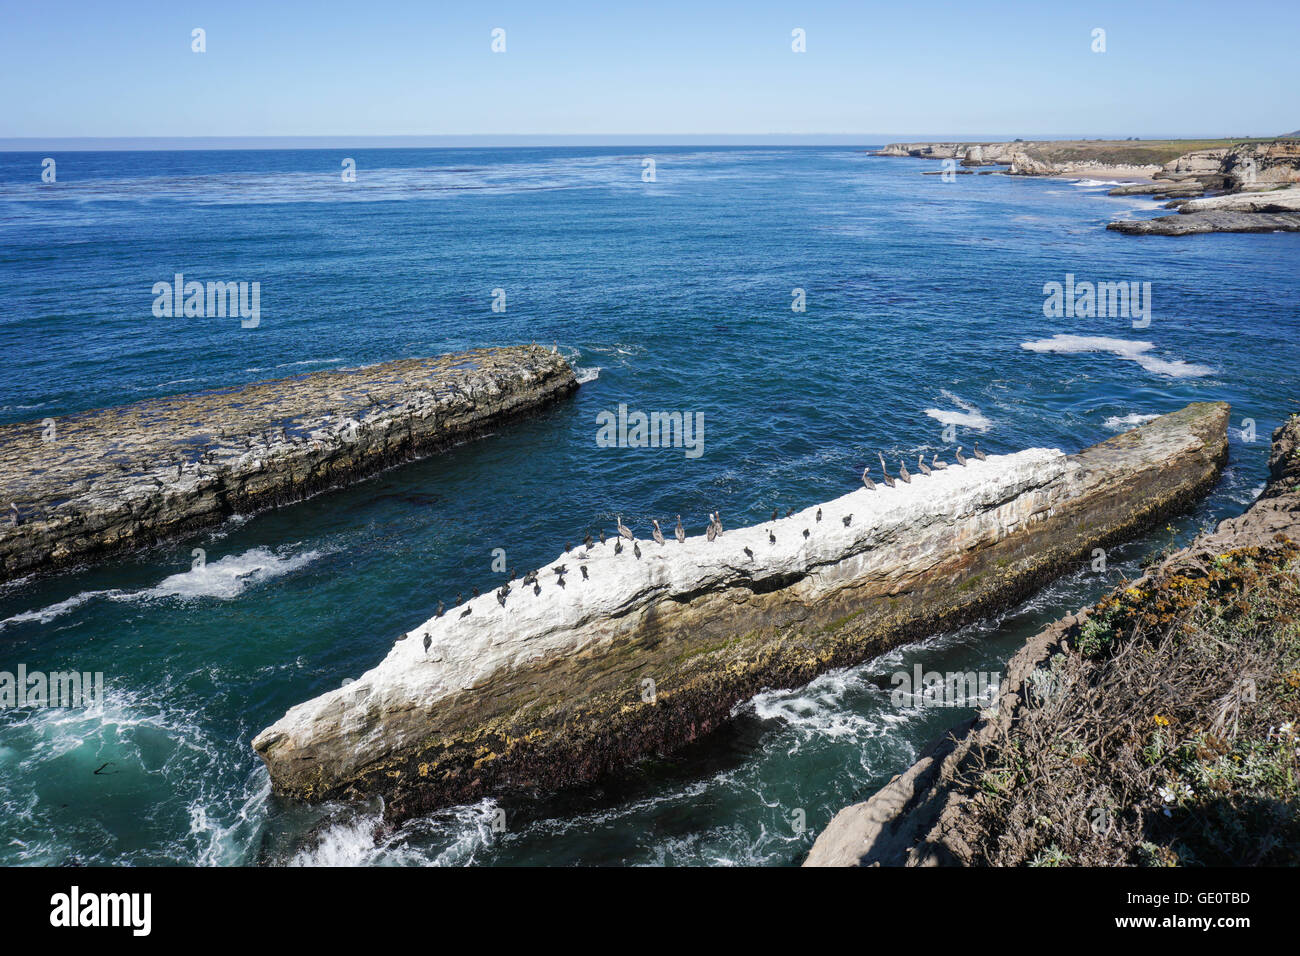 Pelícanos y cormoranes descansando sobre una roca, la costa del Océano Pacífico, California Foto de stock